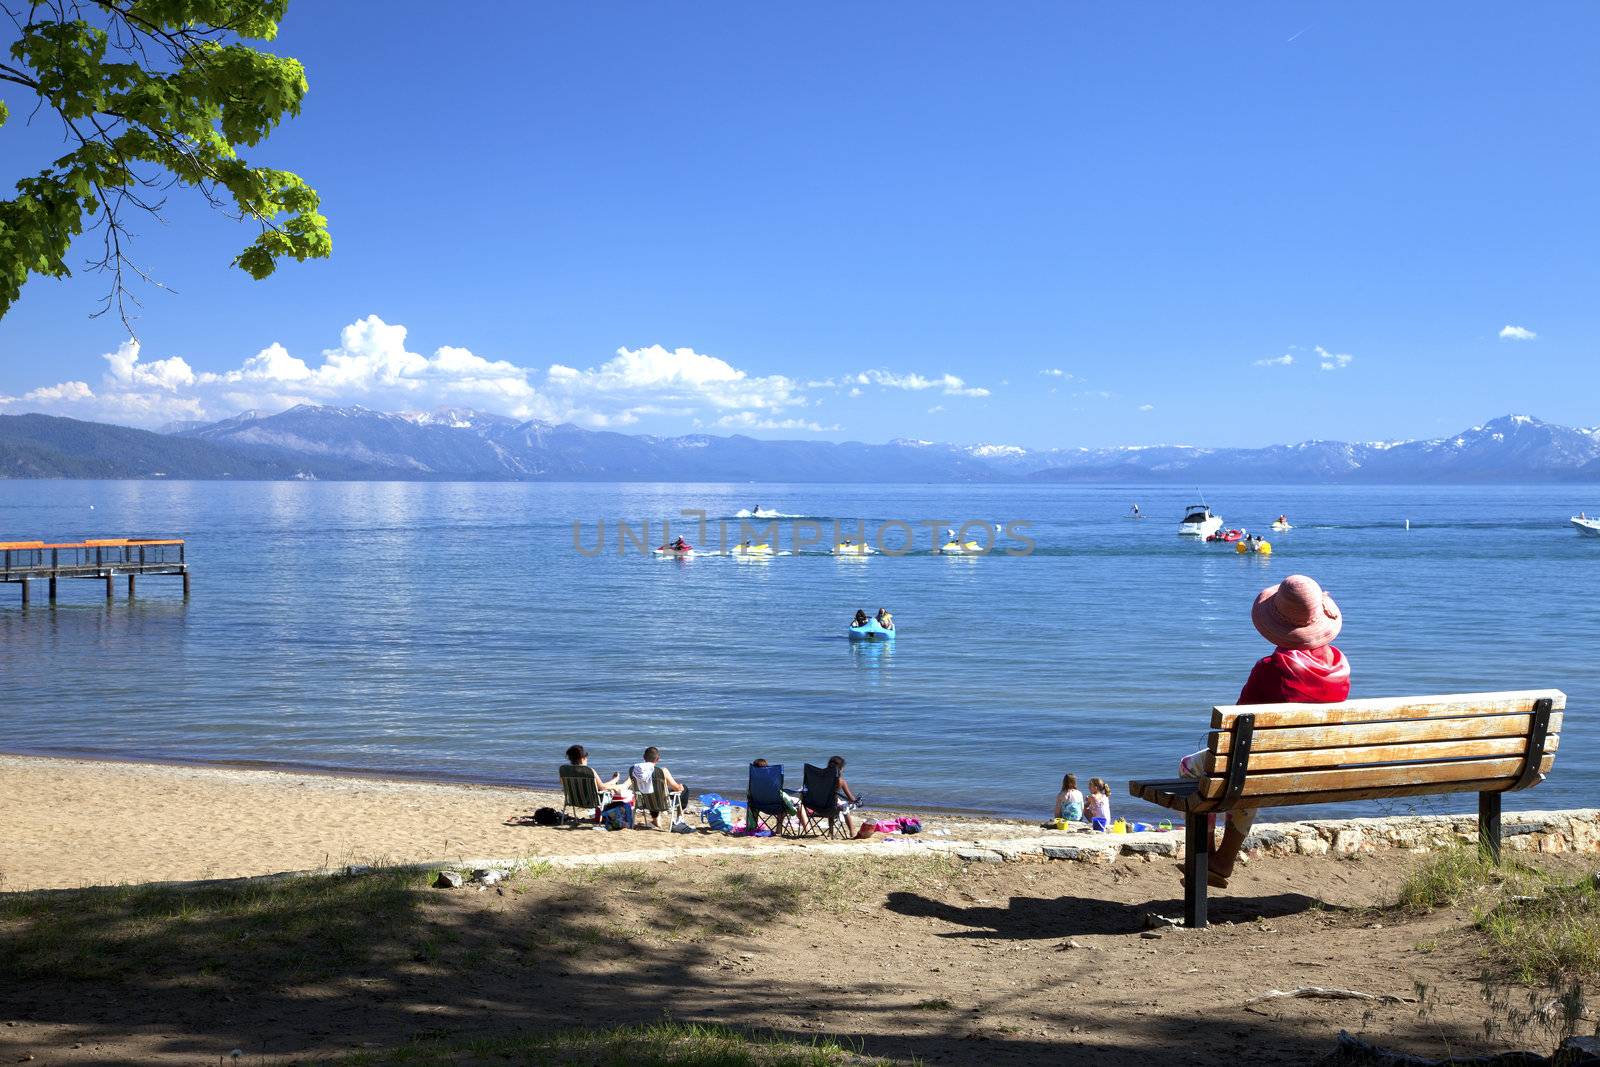 Beach activities and Lake Tahoe scenic view, California.